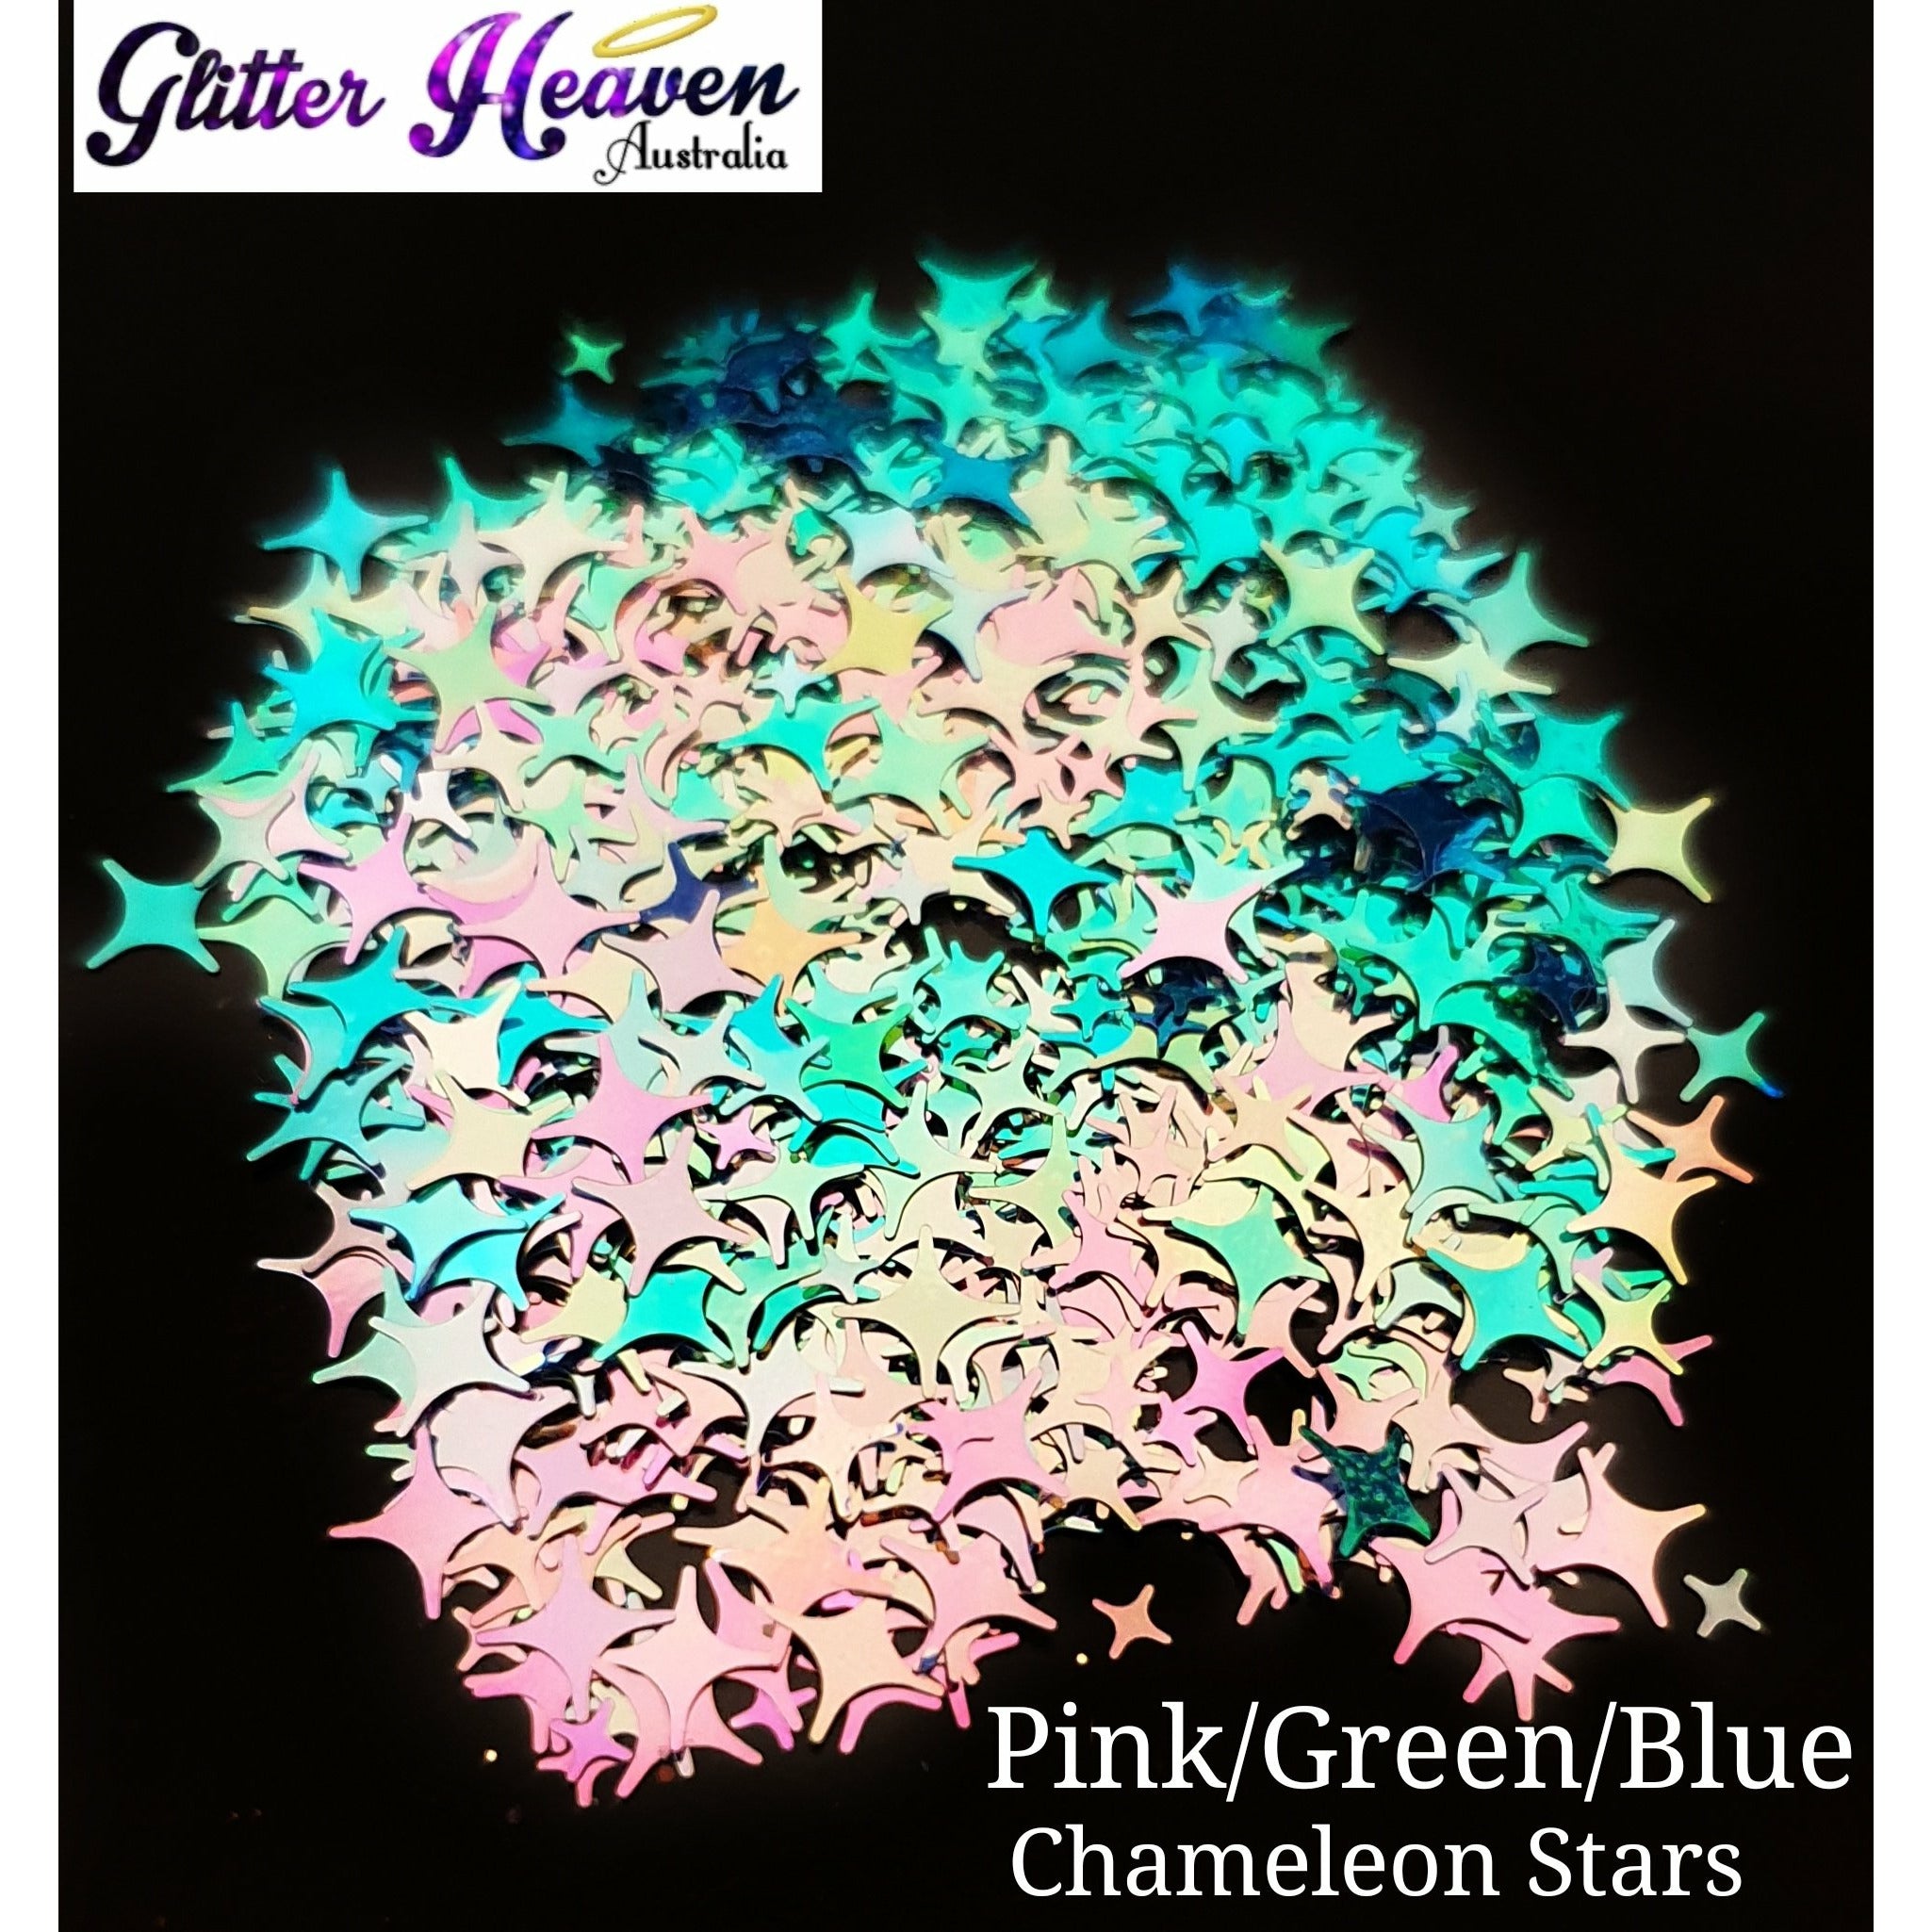 Pink/Green/Blue Chameleon Stars